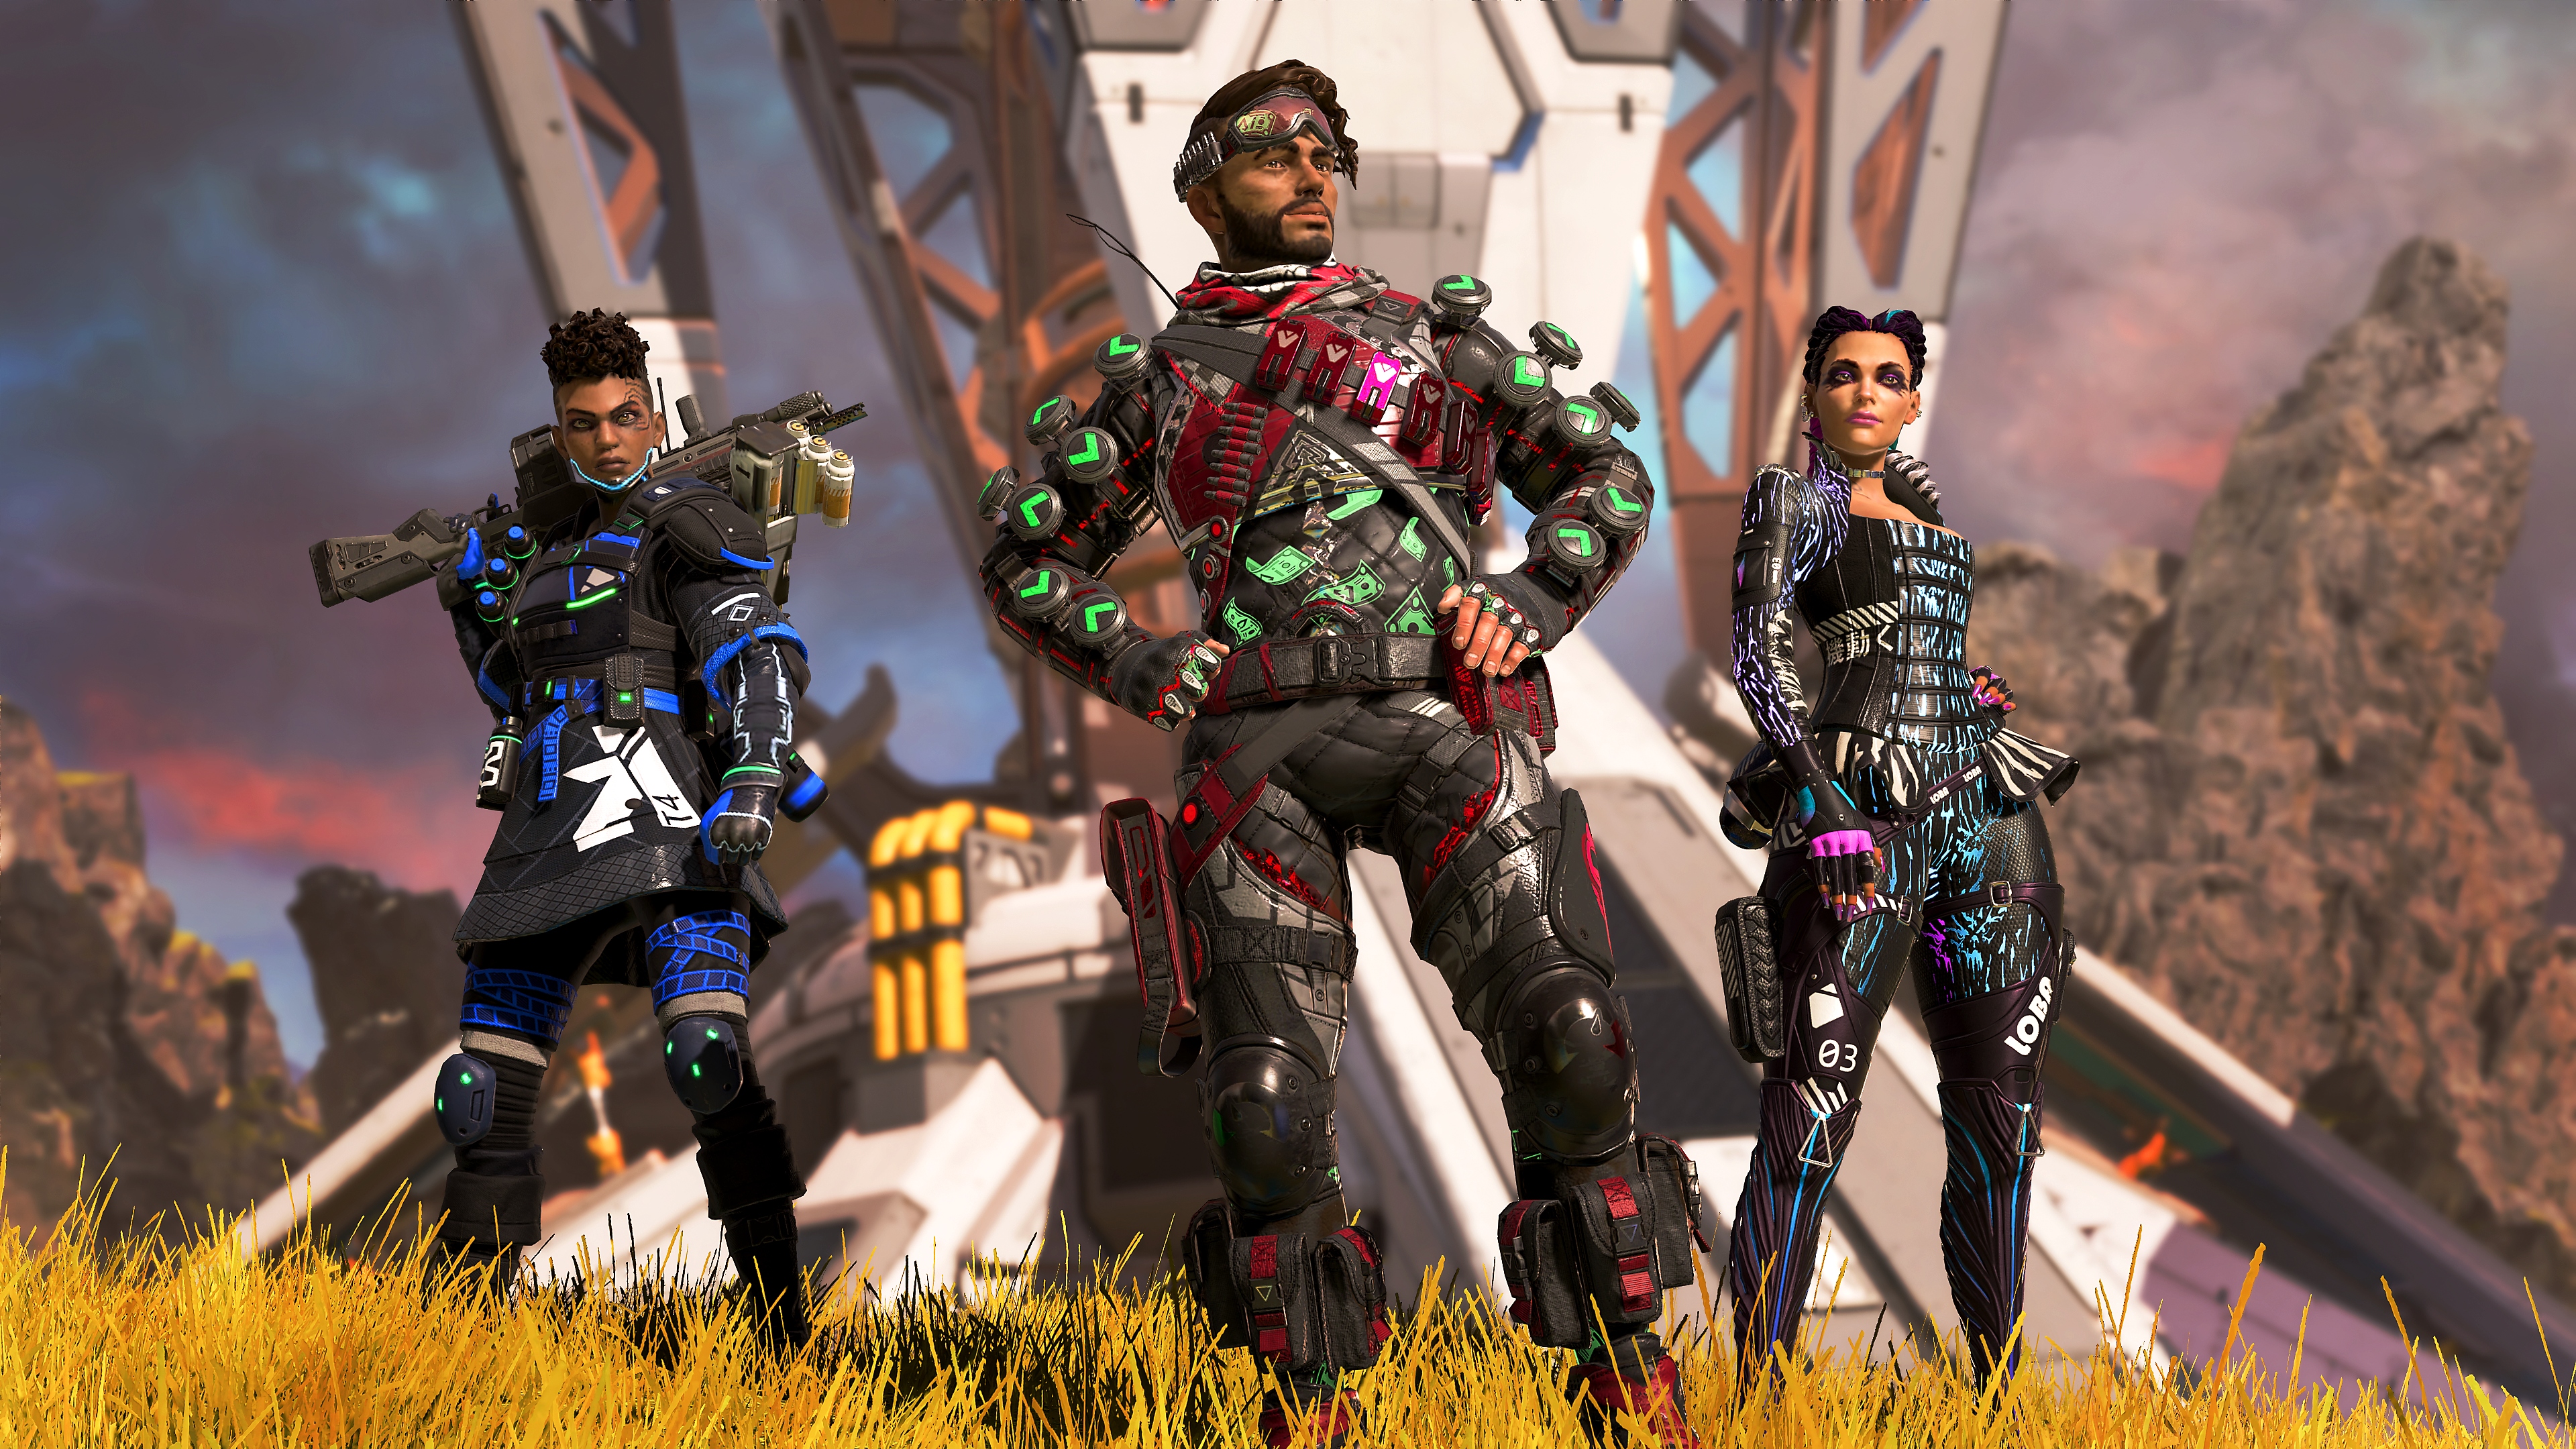 Legends cambia aspectos clave del juego captura de pantalla de tres personajes posando.